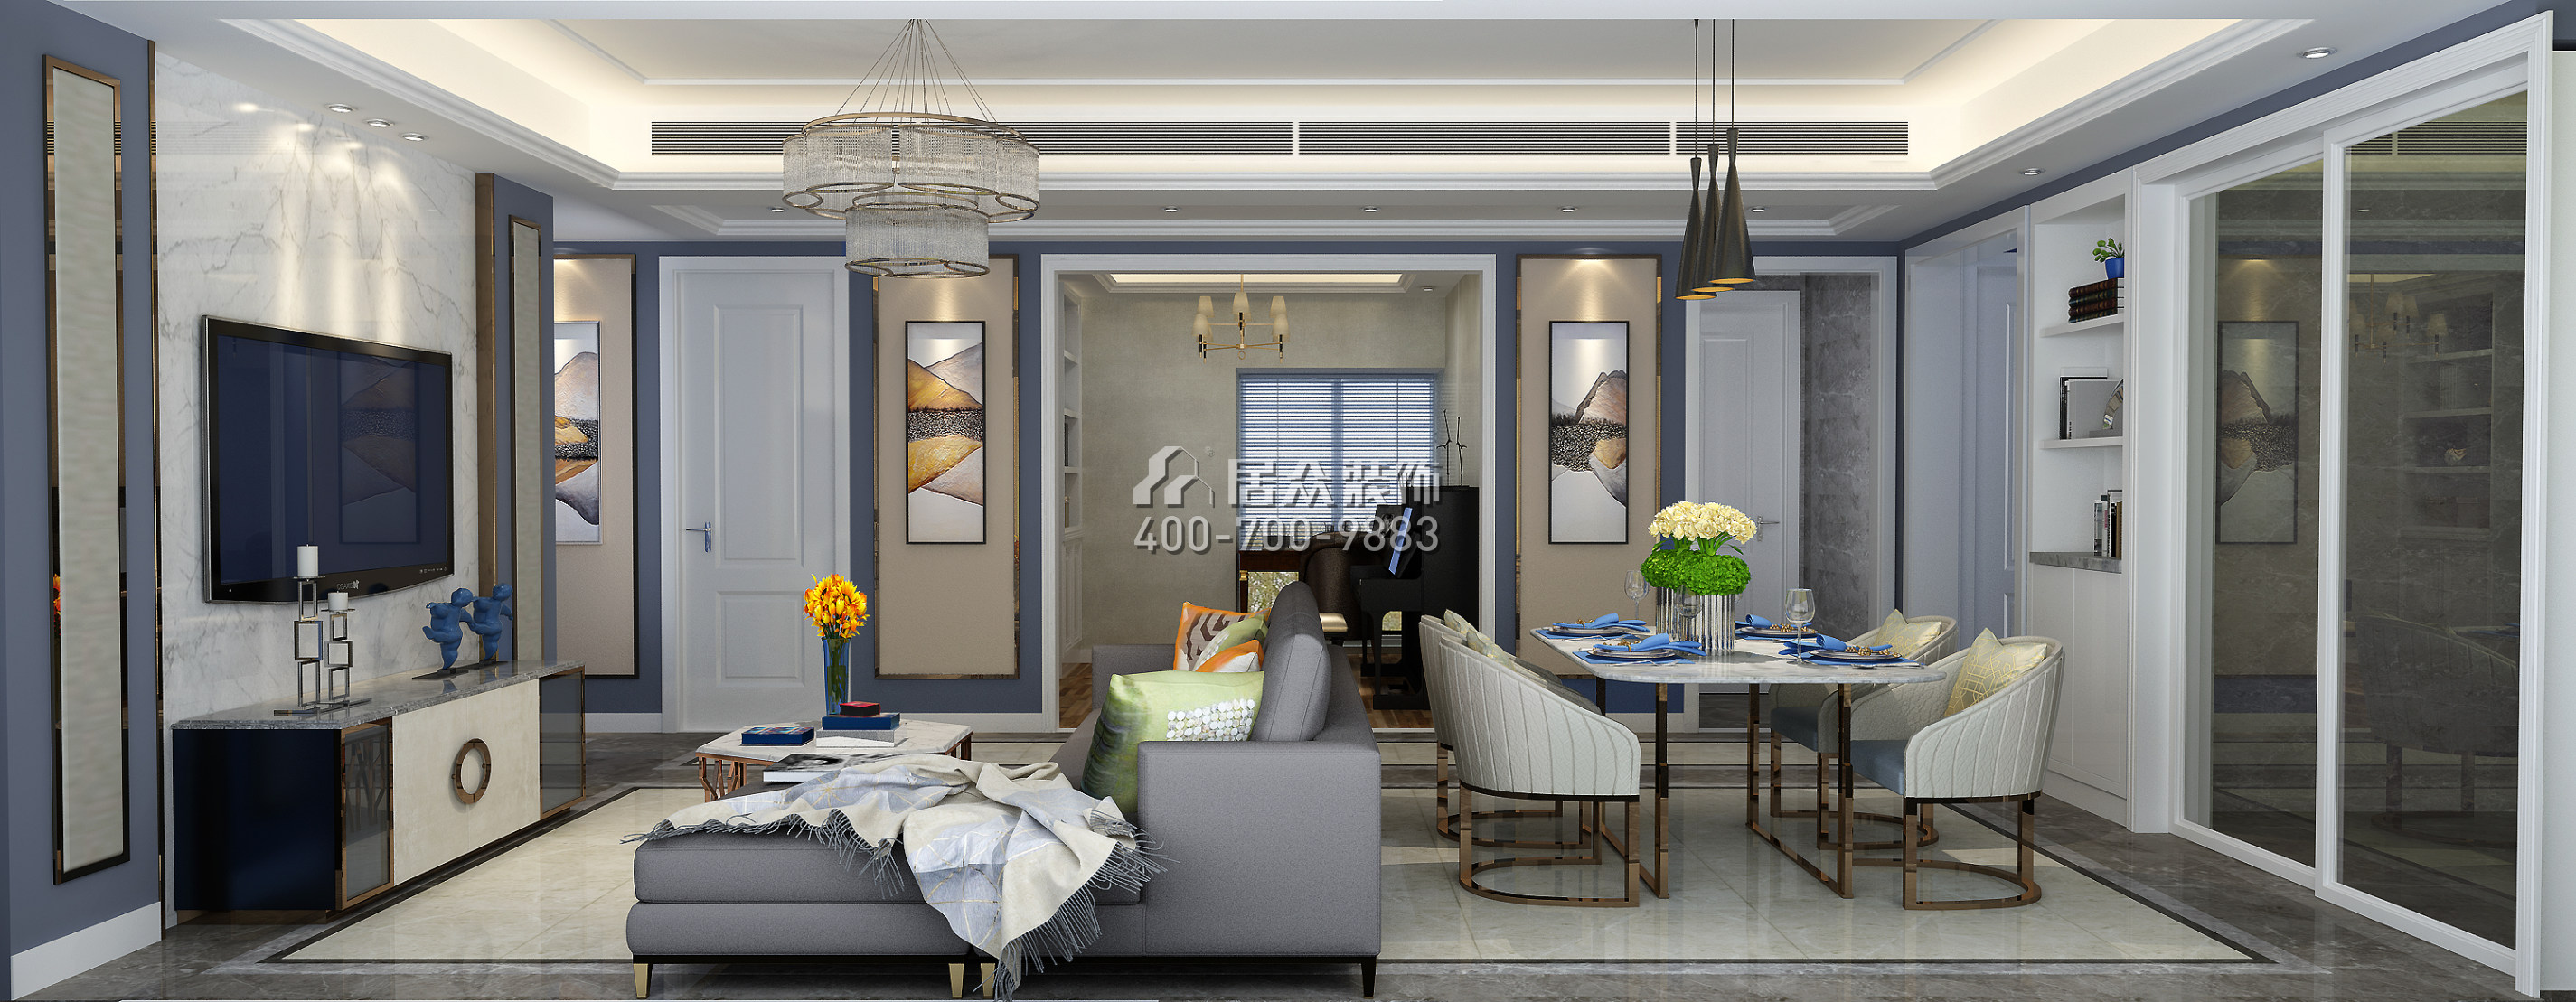 山语海110平方米混搭风格平层户型客厅装修效果图